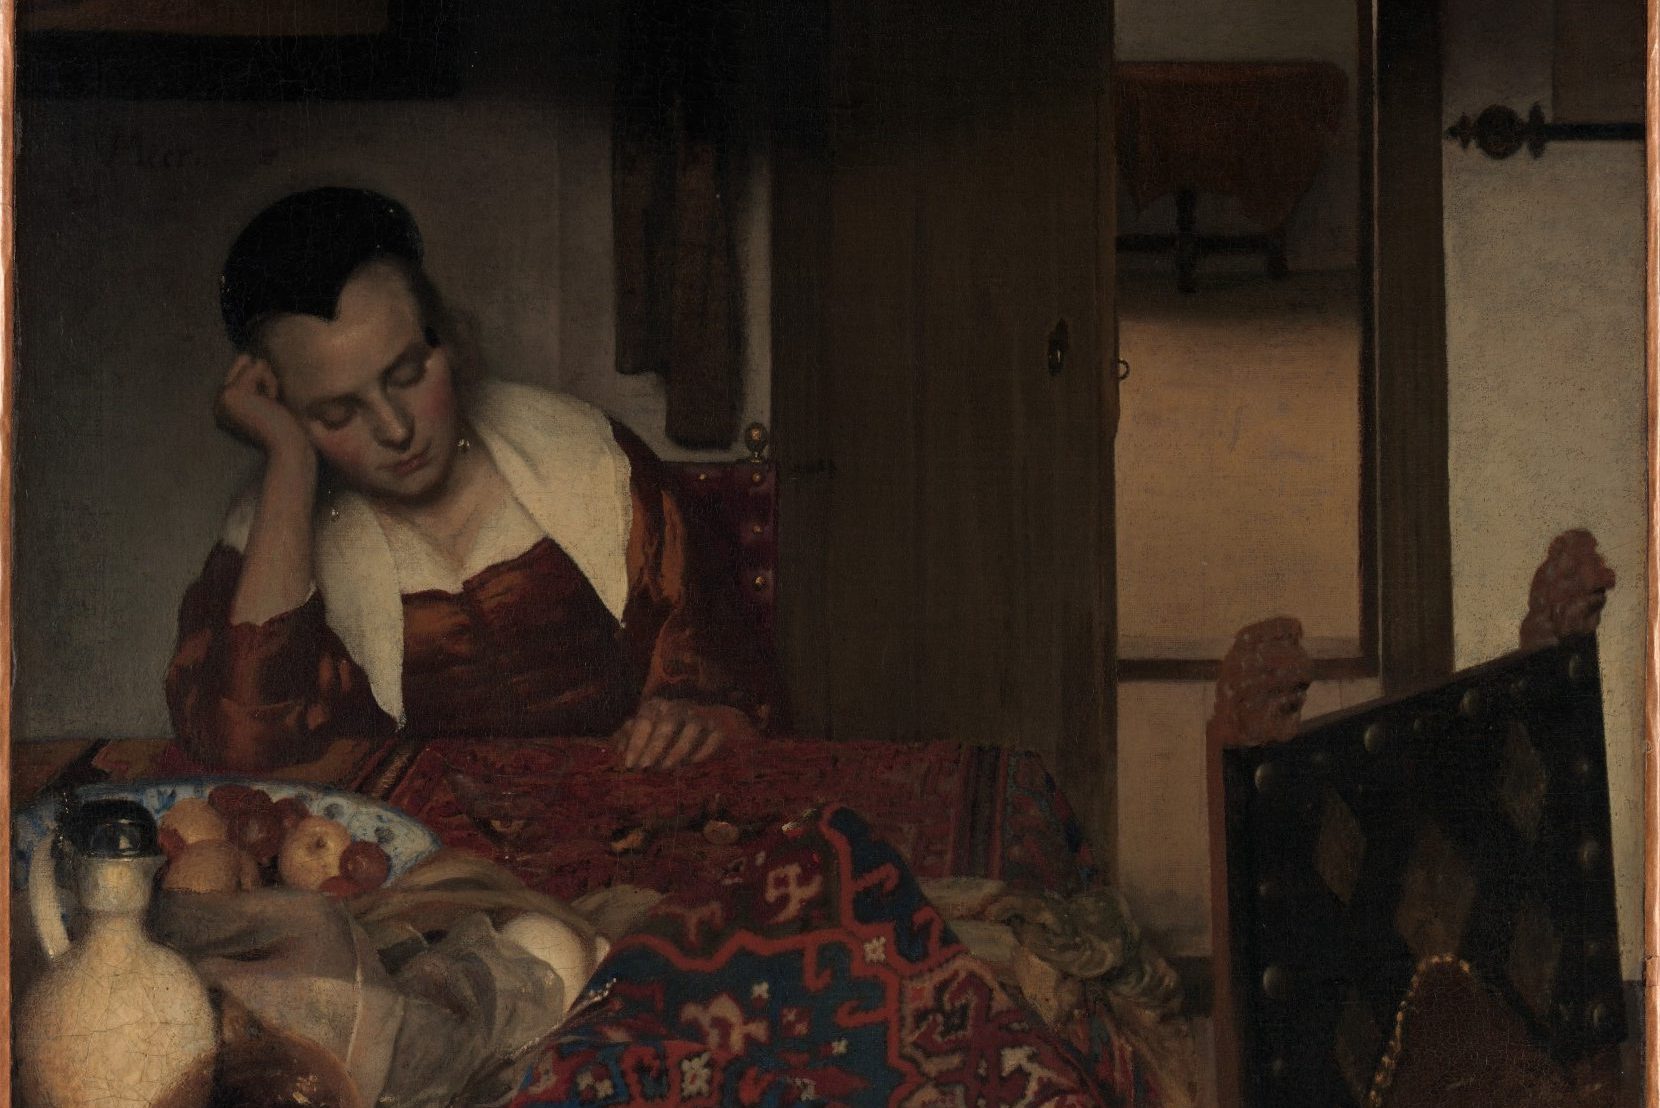 Una strana sedia vuota: Vermeer si era autoritratto in un suo dipinto per poi cancellarsi?